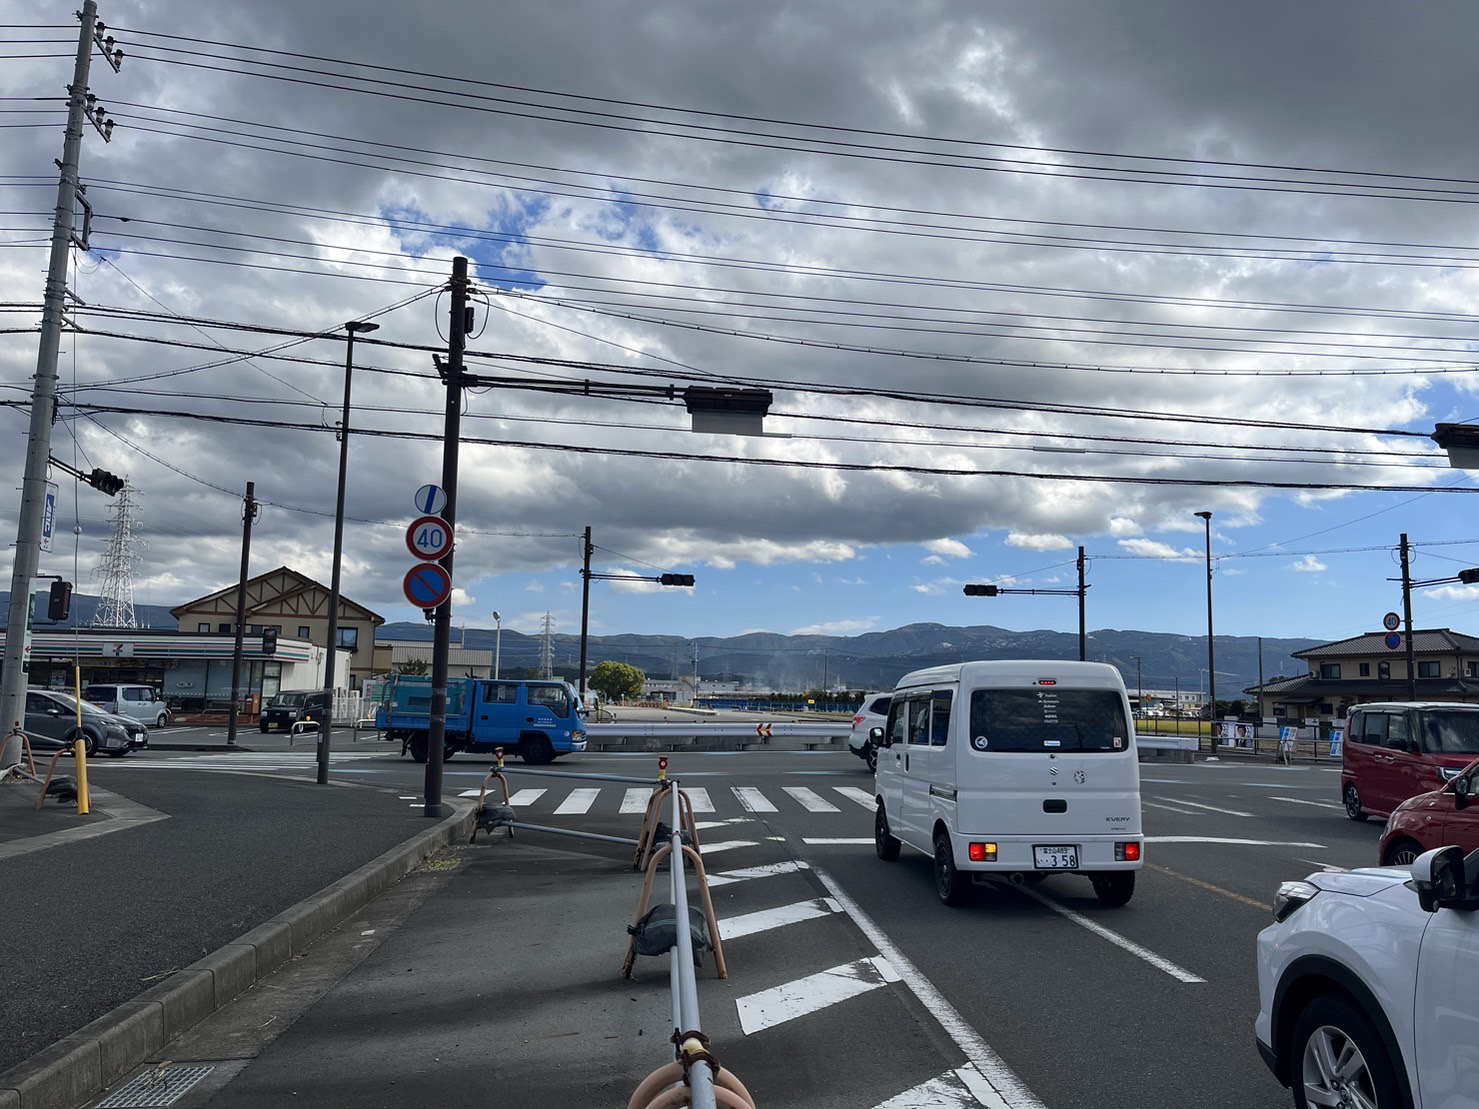 平田の丁字路を右折し、県道140号線を1.5キロ直進すると左手に店舗が見えます。